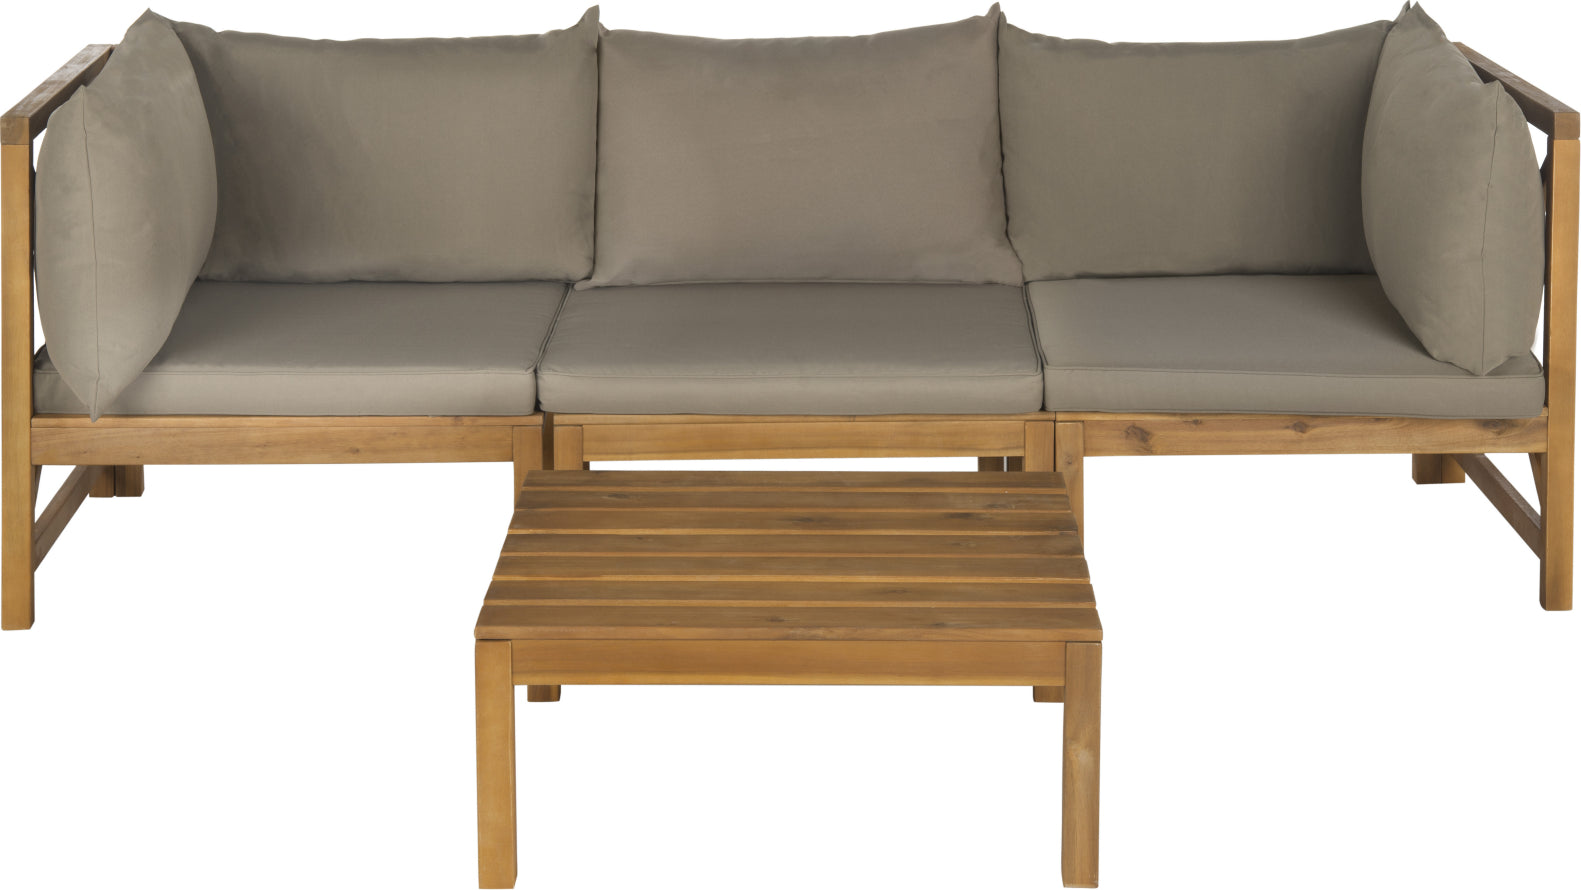 Safavieh Lynwood Modular Outdoor Sectional Teak Brown/Taupe Furniture main image